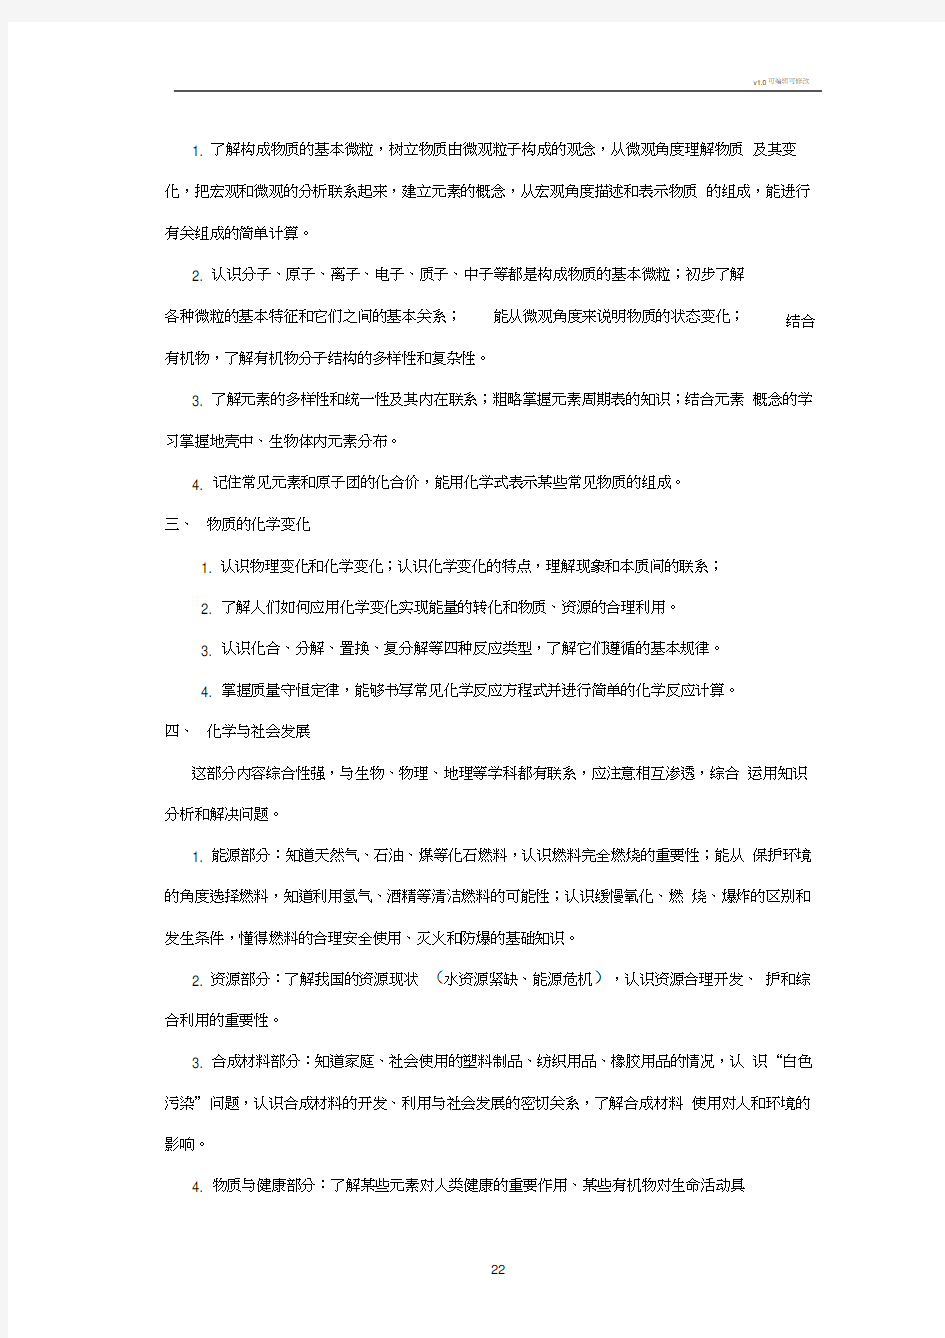 天津中考化学知识点及考点(20200814180943)